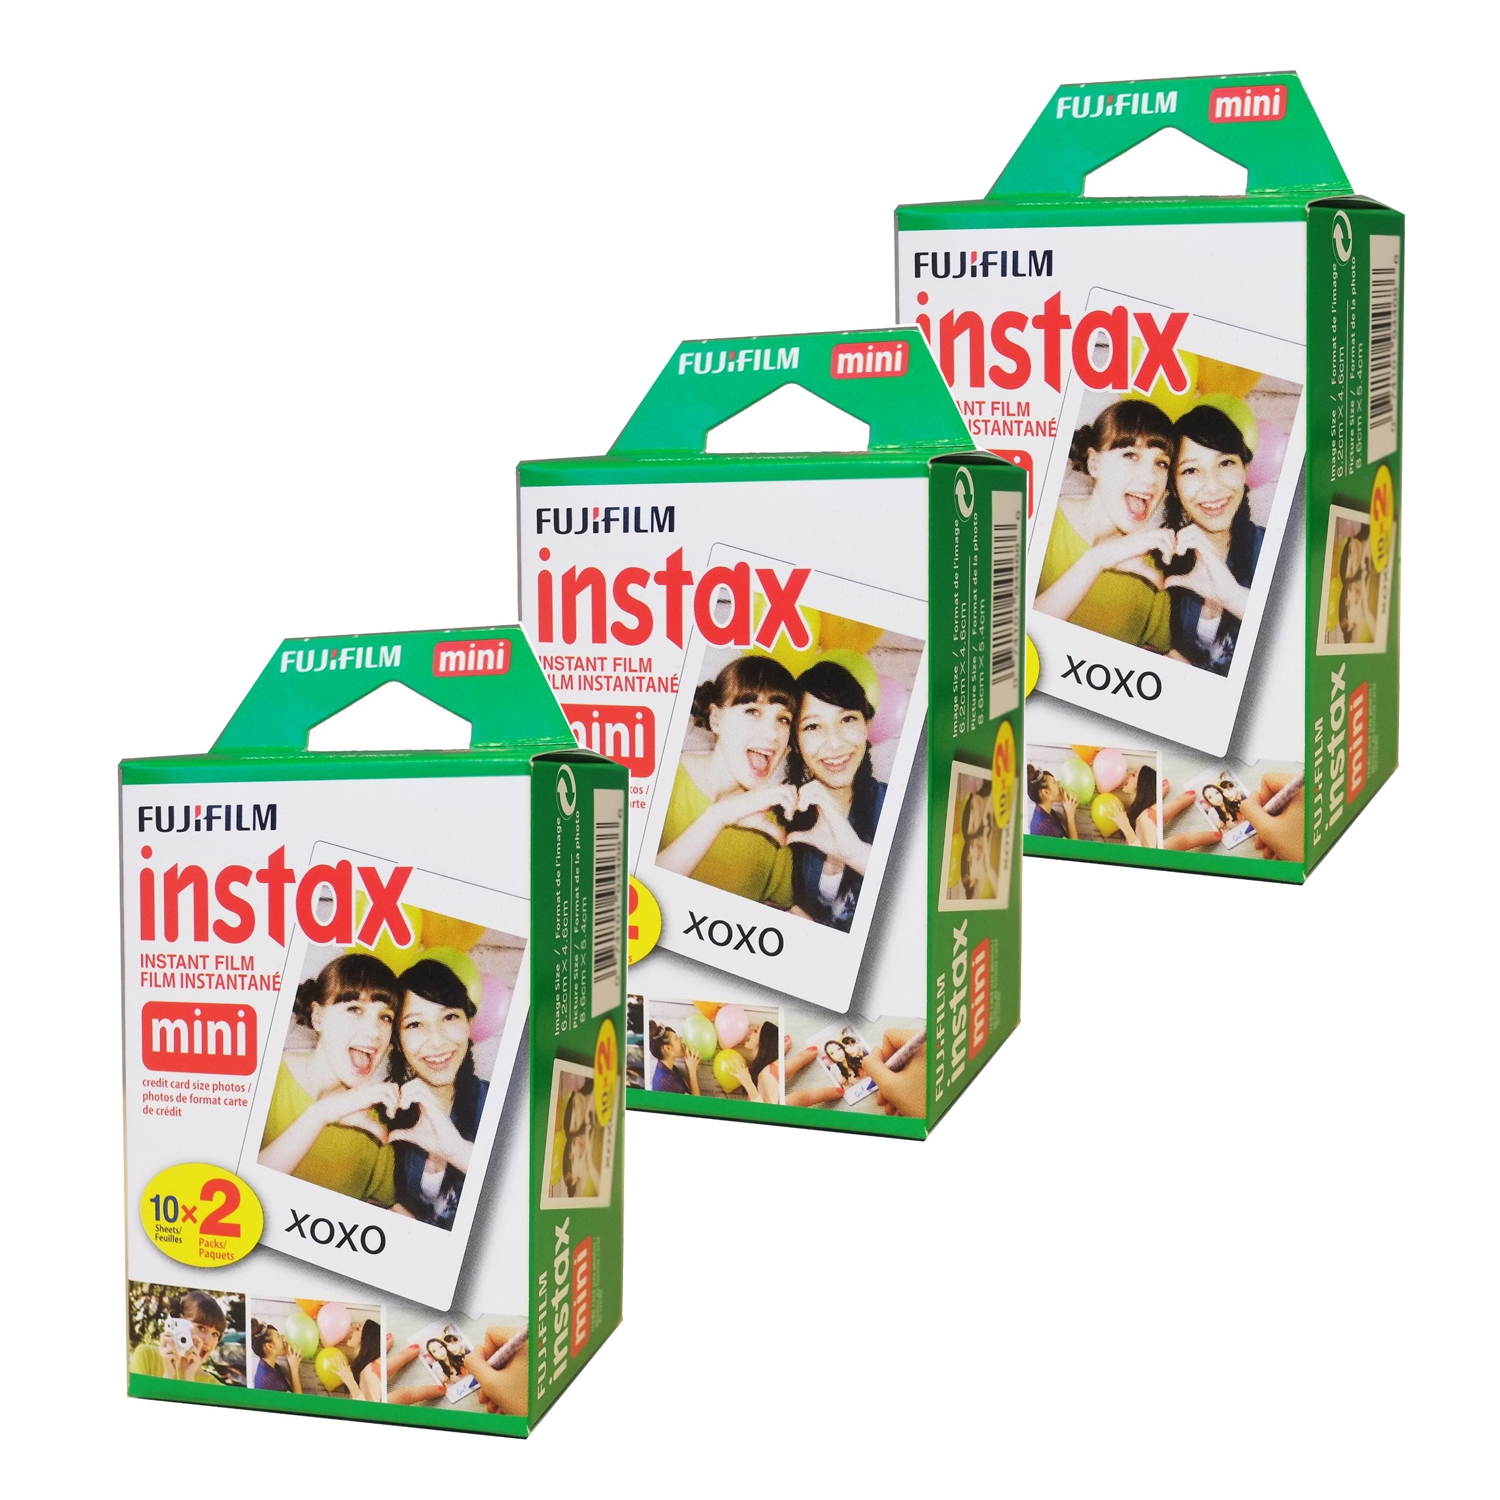 Fujifilm Instax Mini Instant Film 2x10 3 Packs (60 Shots)